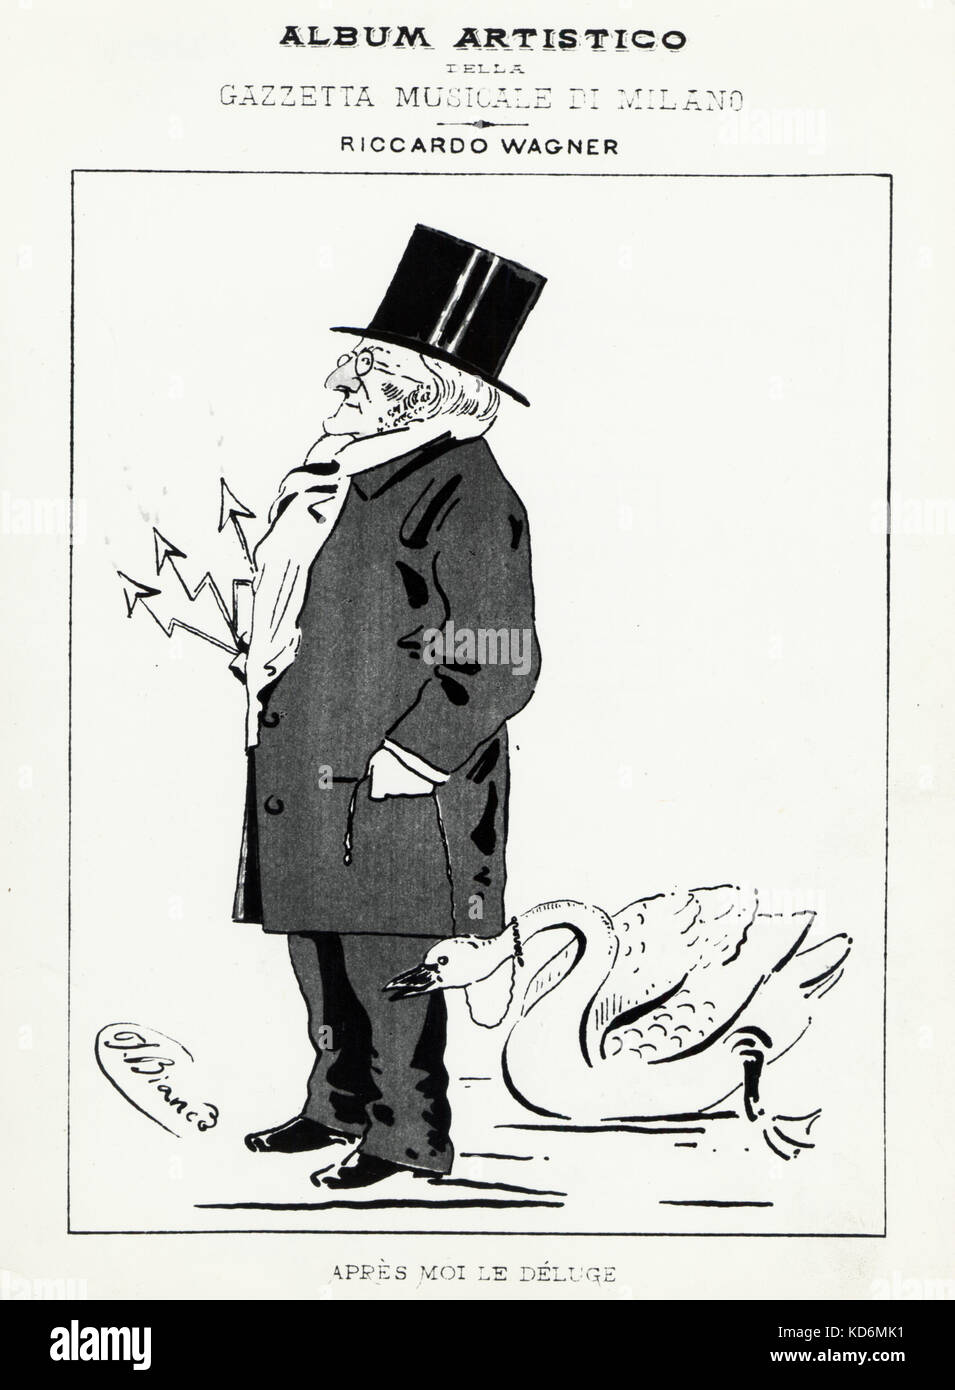 Richard Wagner holding permanente di un cigno su un guinzaglio, "Apres moi le diluvio" Lohengrin connessione. Compositore tedesco & autore, 22 maggio 1813 - 13 febbraio 1883. Foto Stock